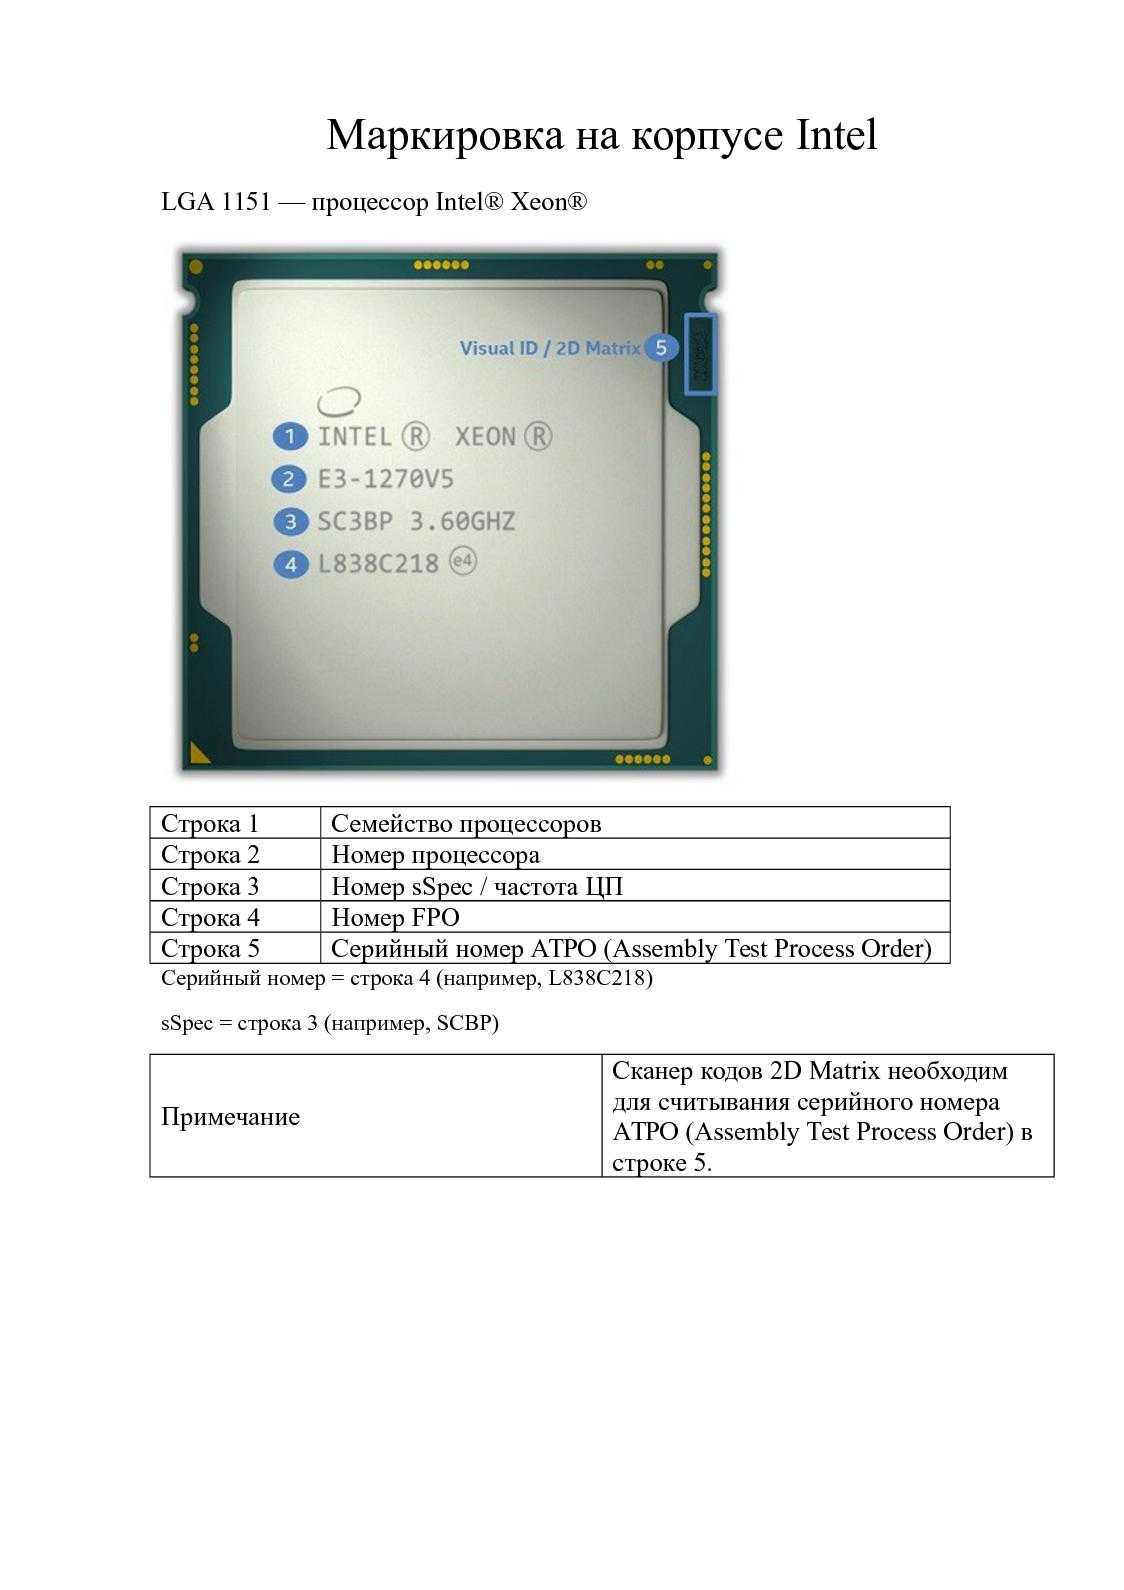 Core i5-8250u  - intel - wikichip